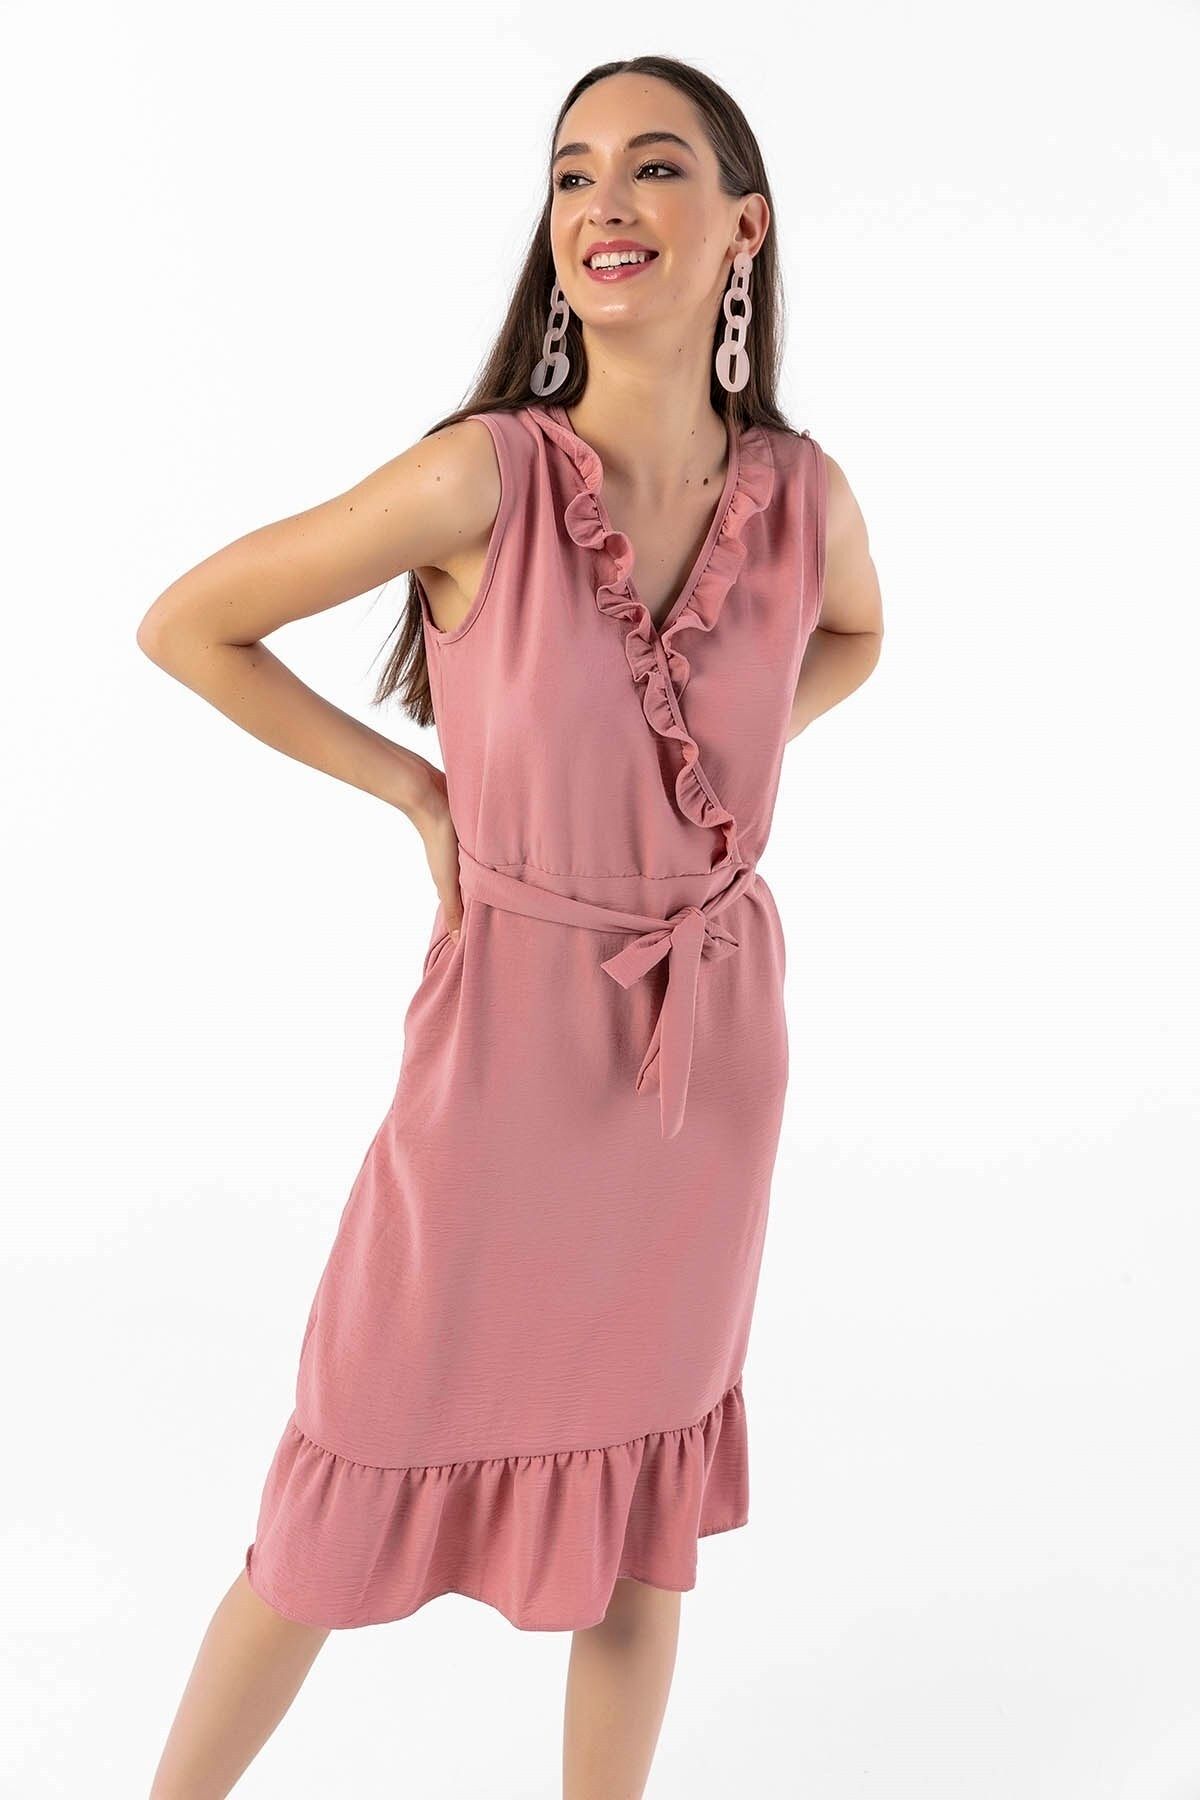 By Saygı Önü Eteği Volanlı Kuşaklı Krep Elbise Pudra